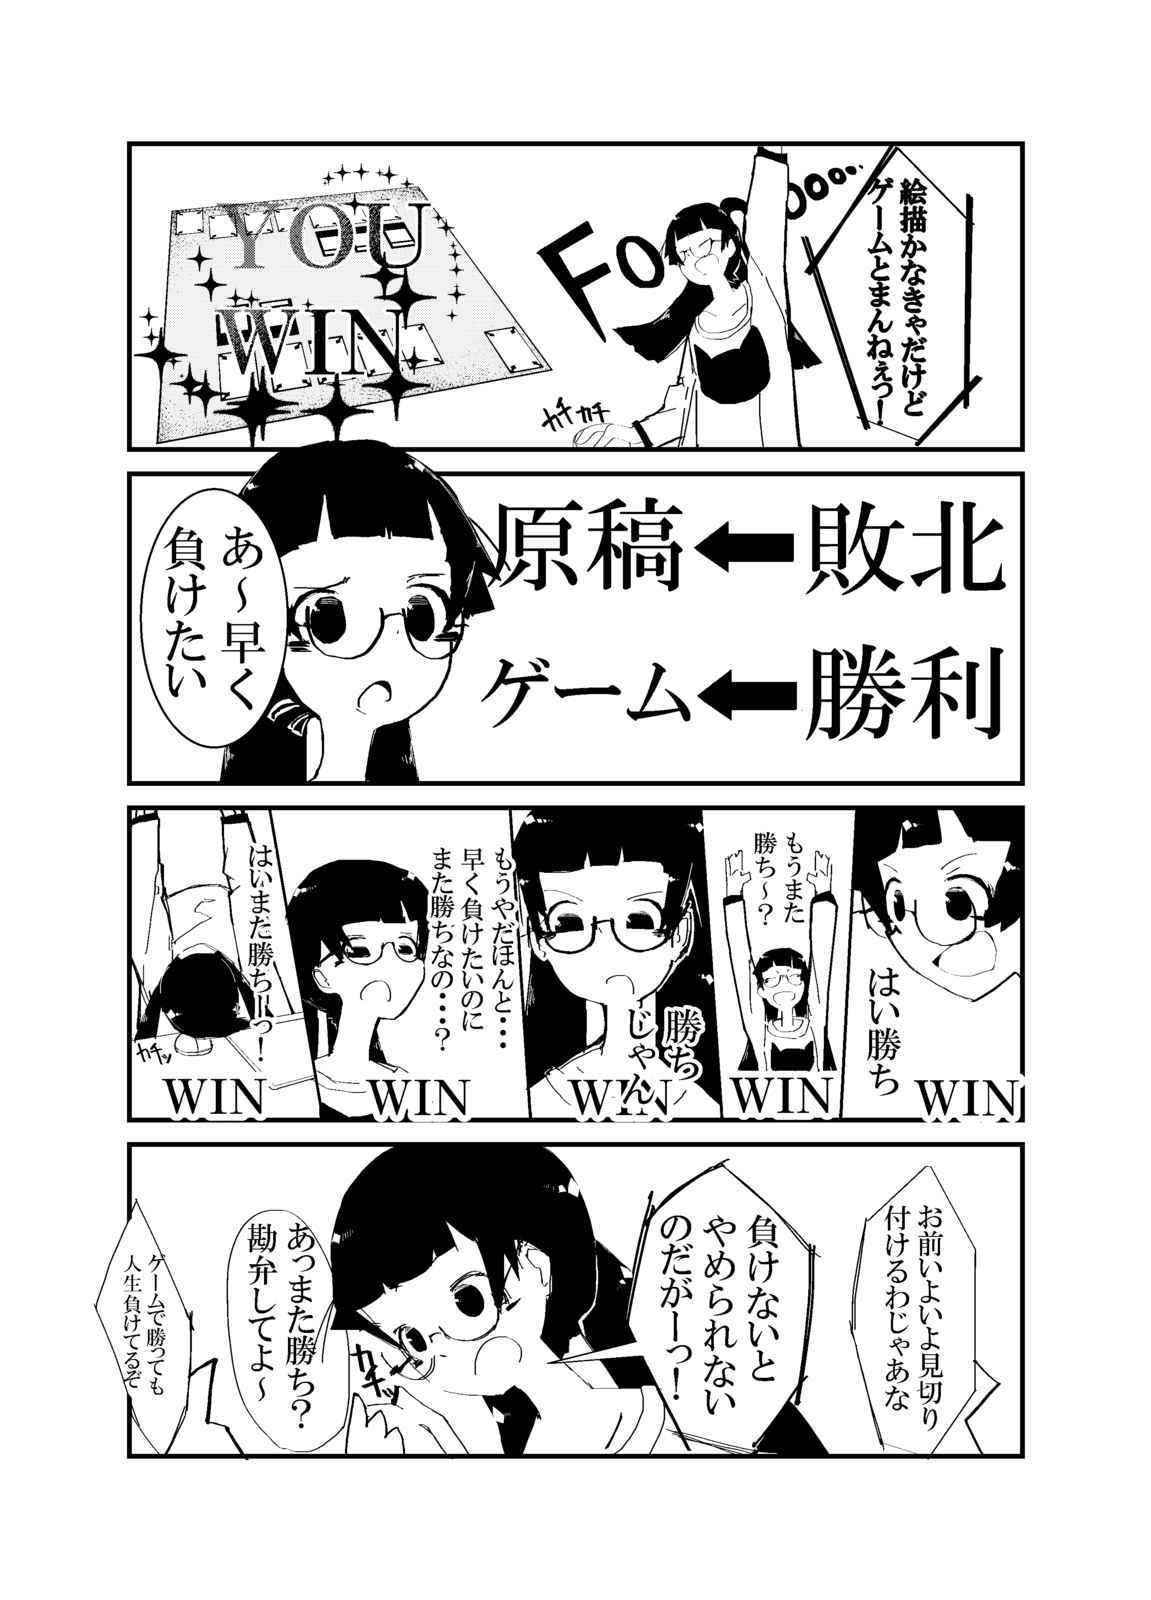 プロ漫画家を目指すっ 生主黒子ちゃんの日常 第8話 Days Neo デイズネオ